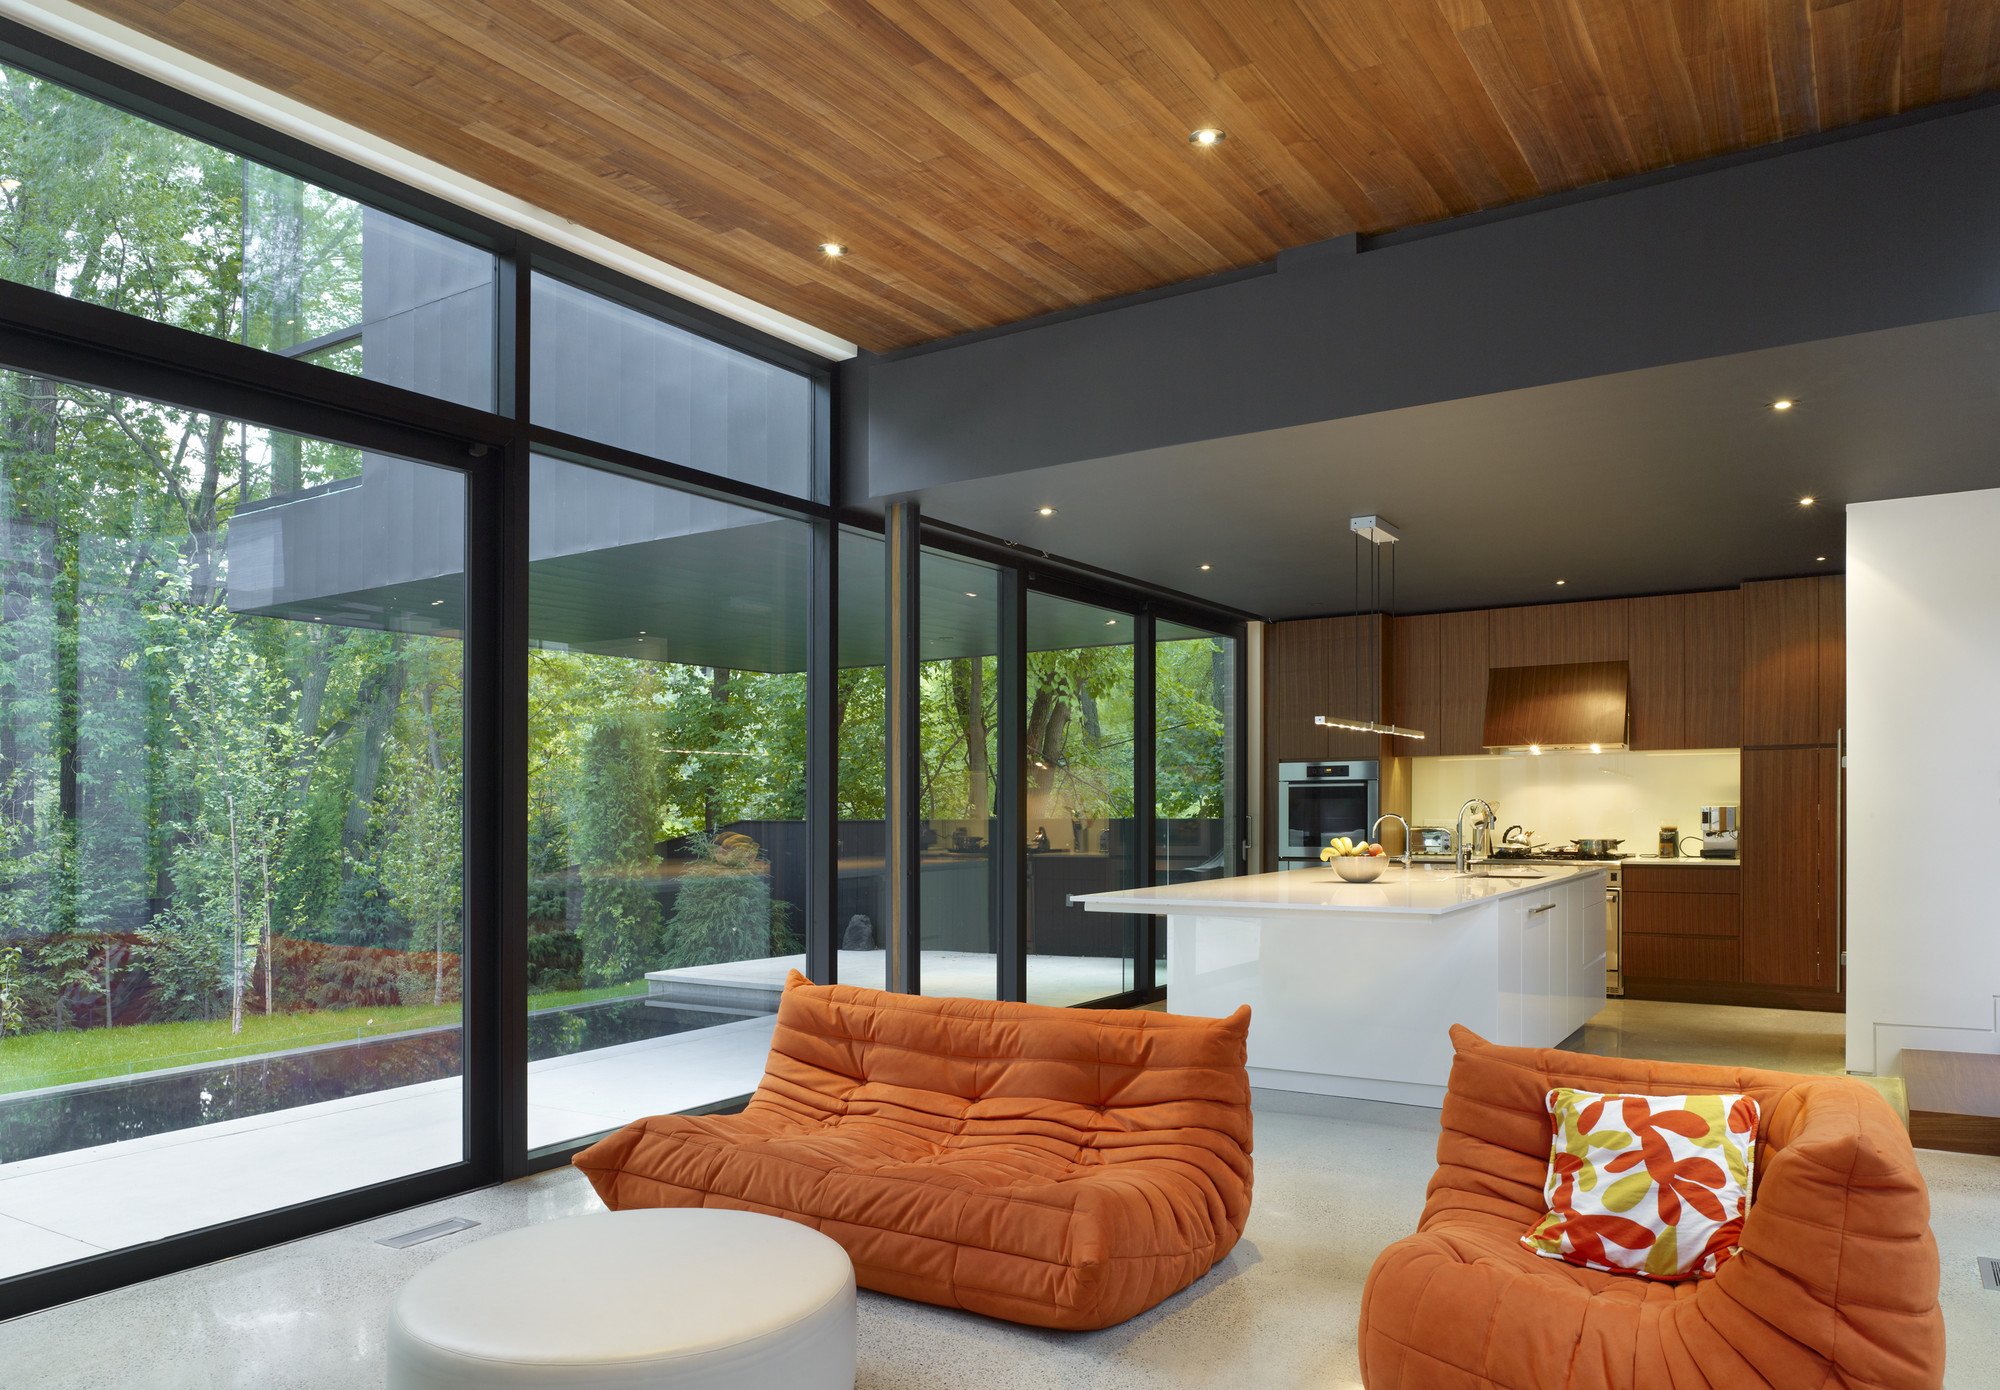 Особенности выбора классического деревянного финского дома со стеклянным фасадом